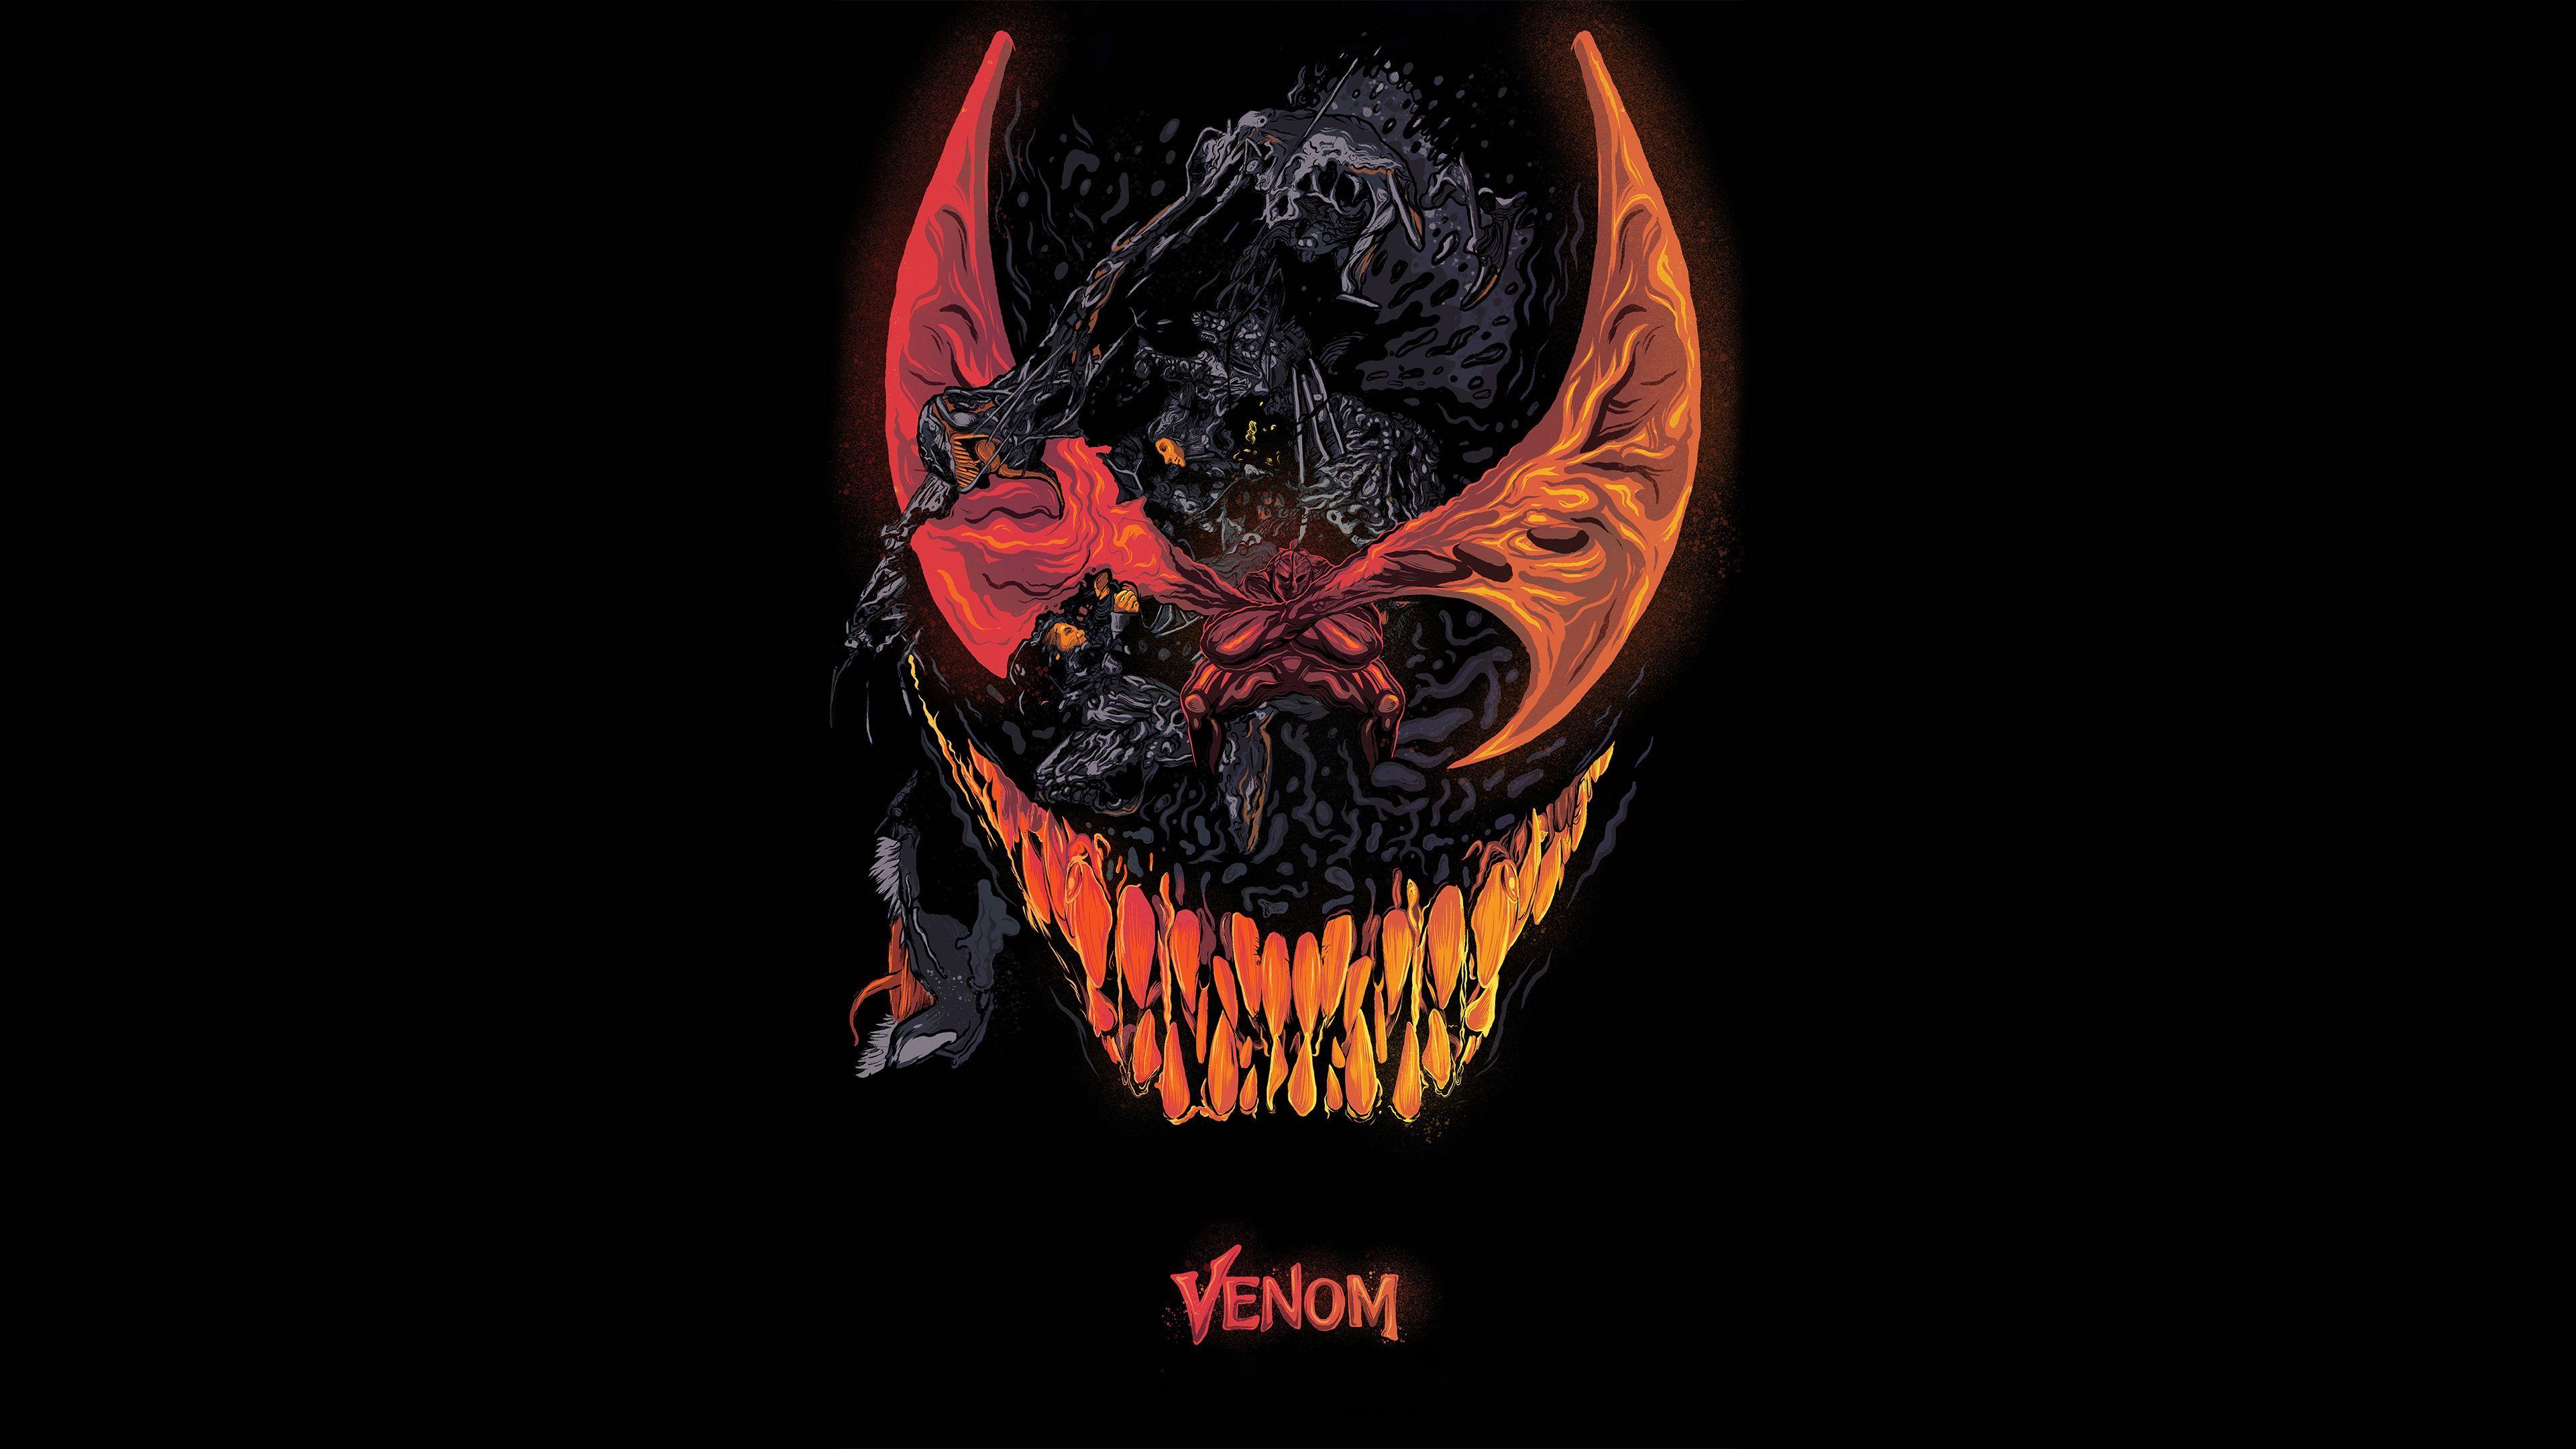 Venom Movie Artworks 4k Venom wallpaper, venom movie wallpaper